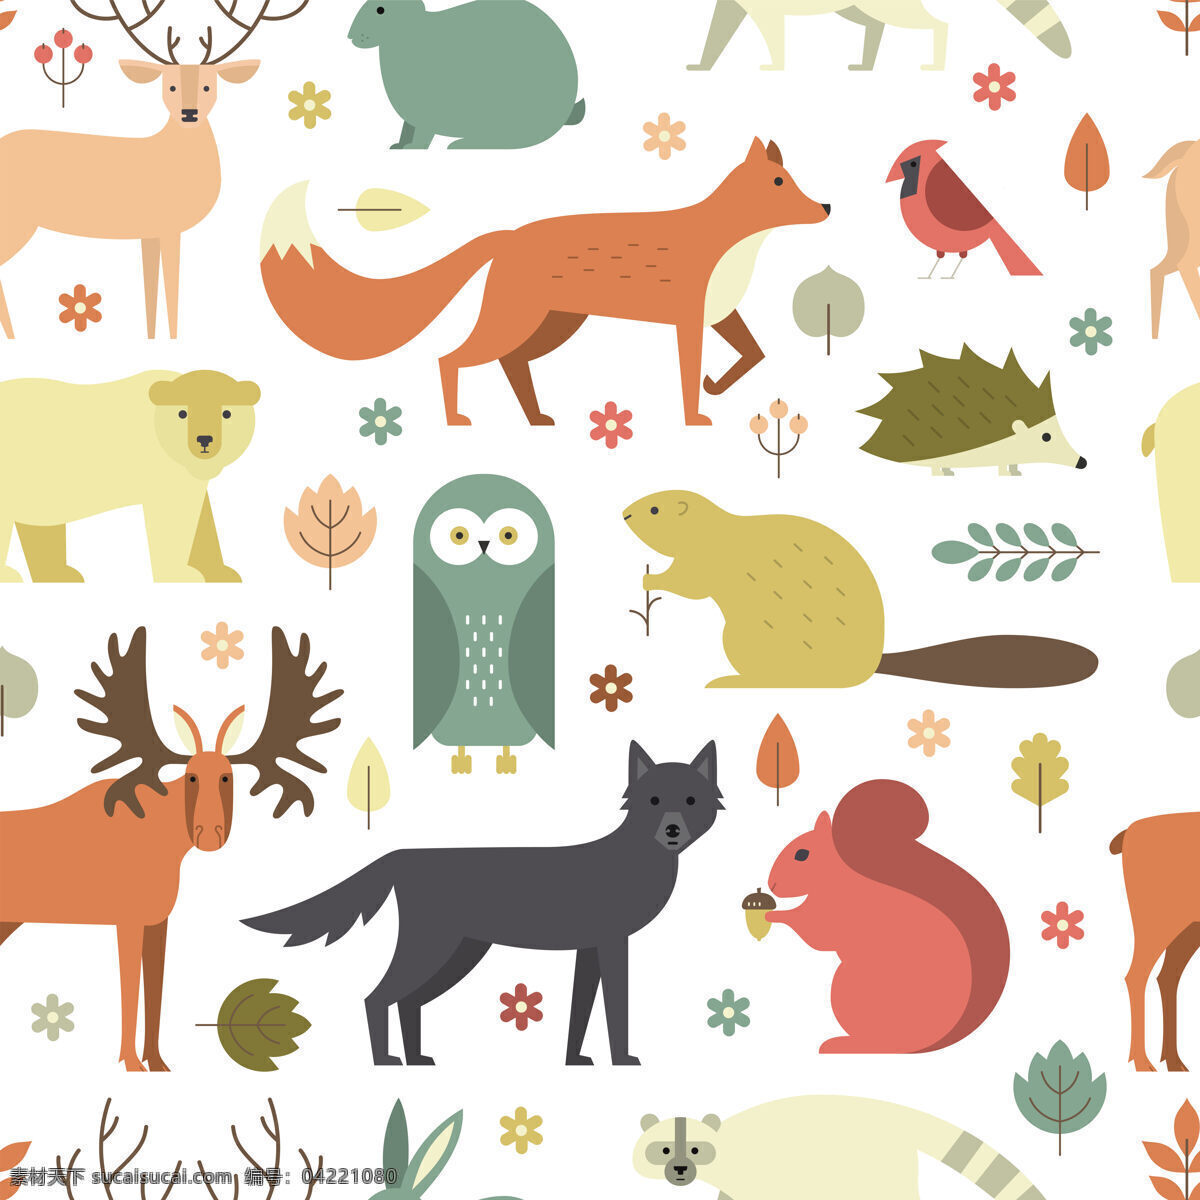 童趣 清新 动物 图案 壁纸 装饰设计 小鹿 松鼠 猫头鹰 小鸟 小狼 壁纸图案